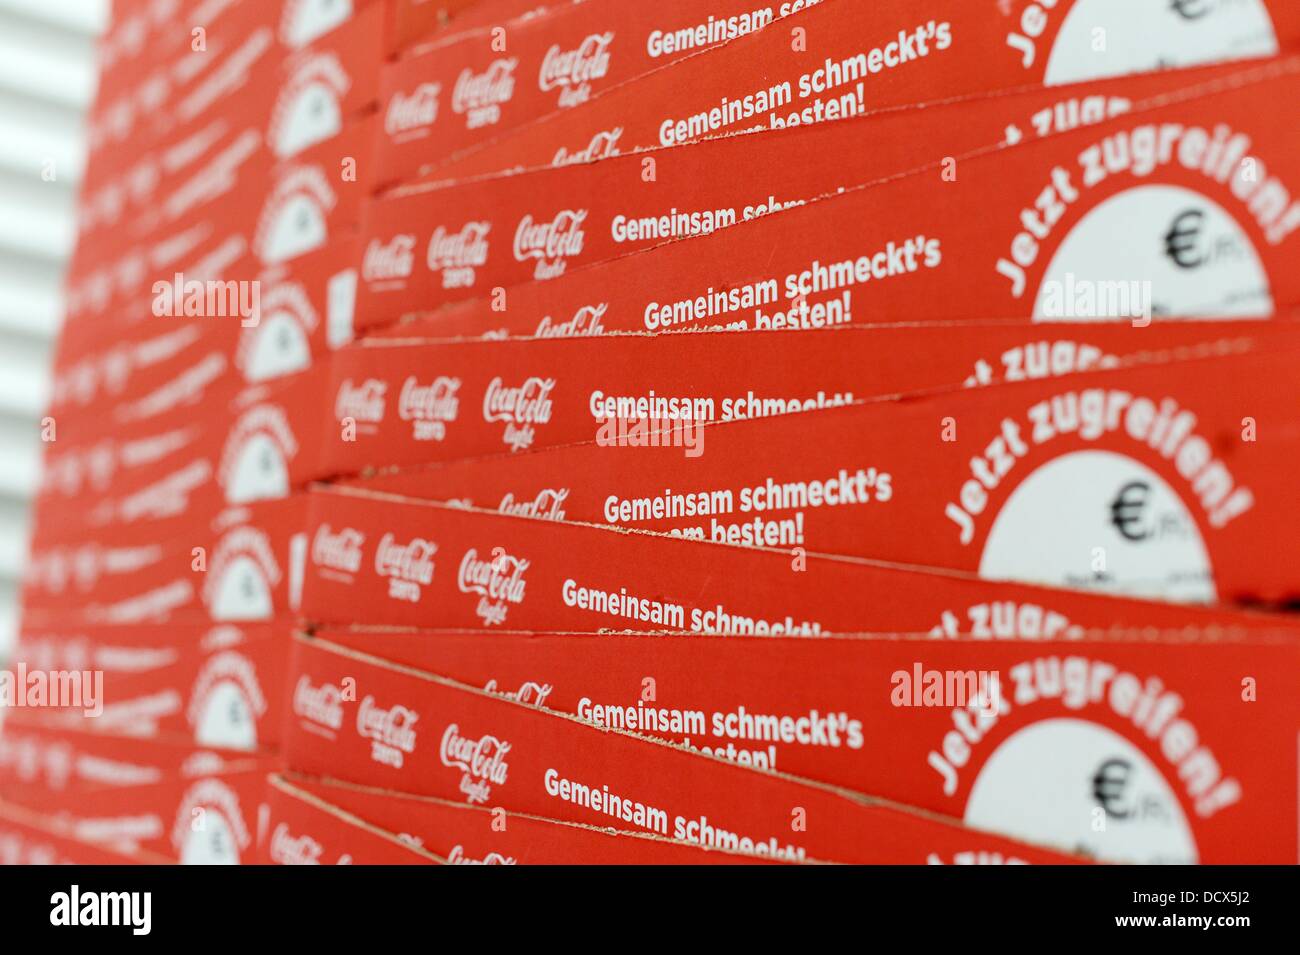 Gestapelten Kartons Tabletts Fur Flaschen Sind Im Verteilzentrum Der Coca Cola Erfrischungsgetranke Ag Produktionsstatte In Genshagen Deutschland 21 August 13 Abgebildet Hier Werden Coca Cola Produkte In Einwegverpackungen Auf 158 000